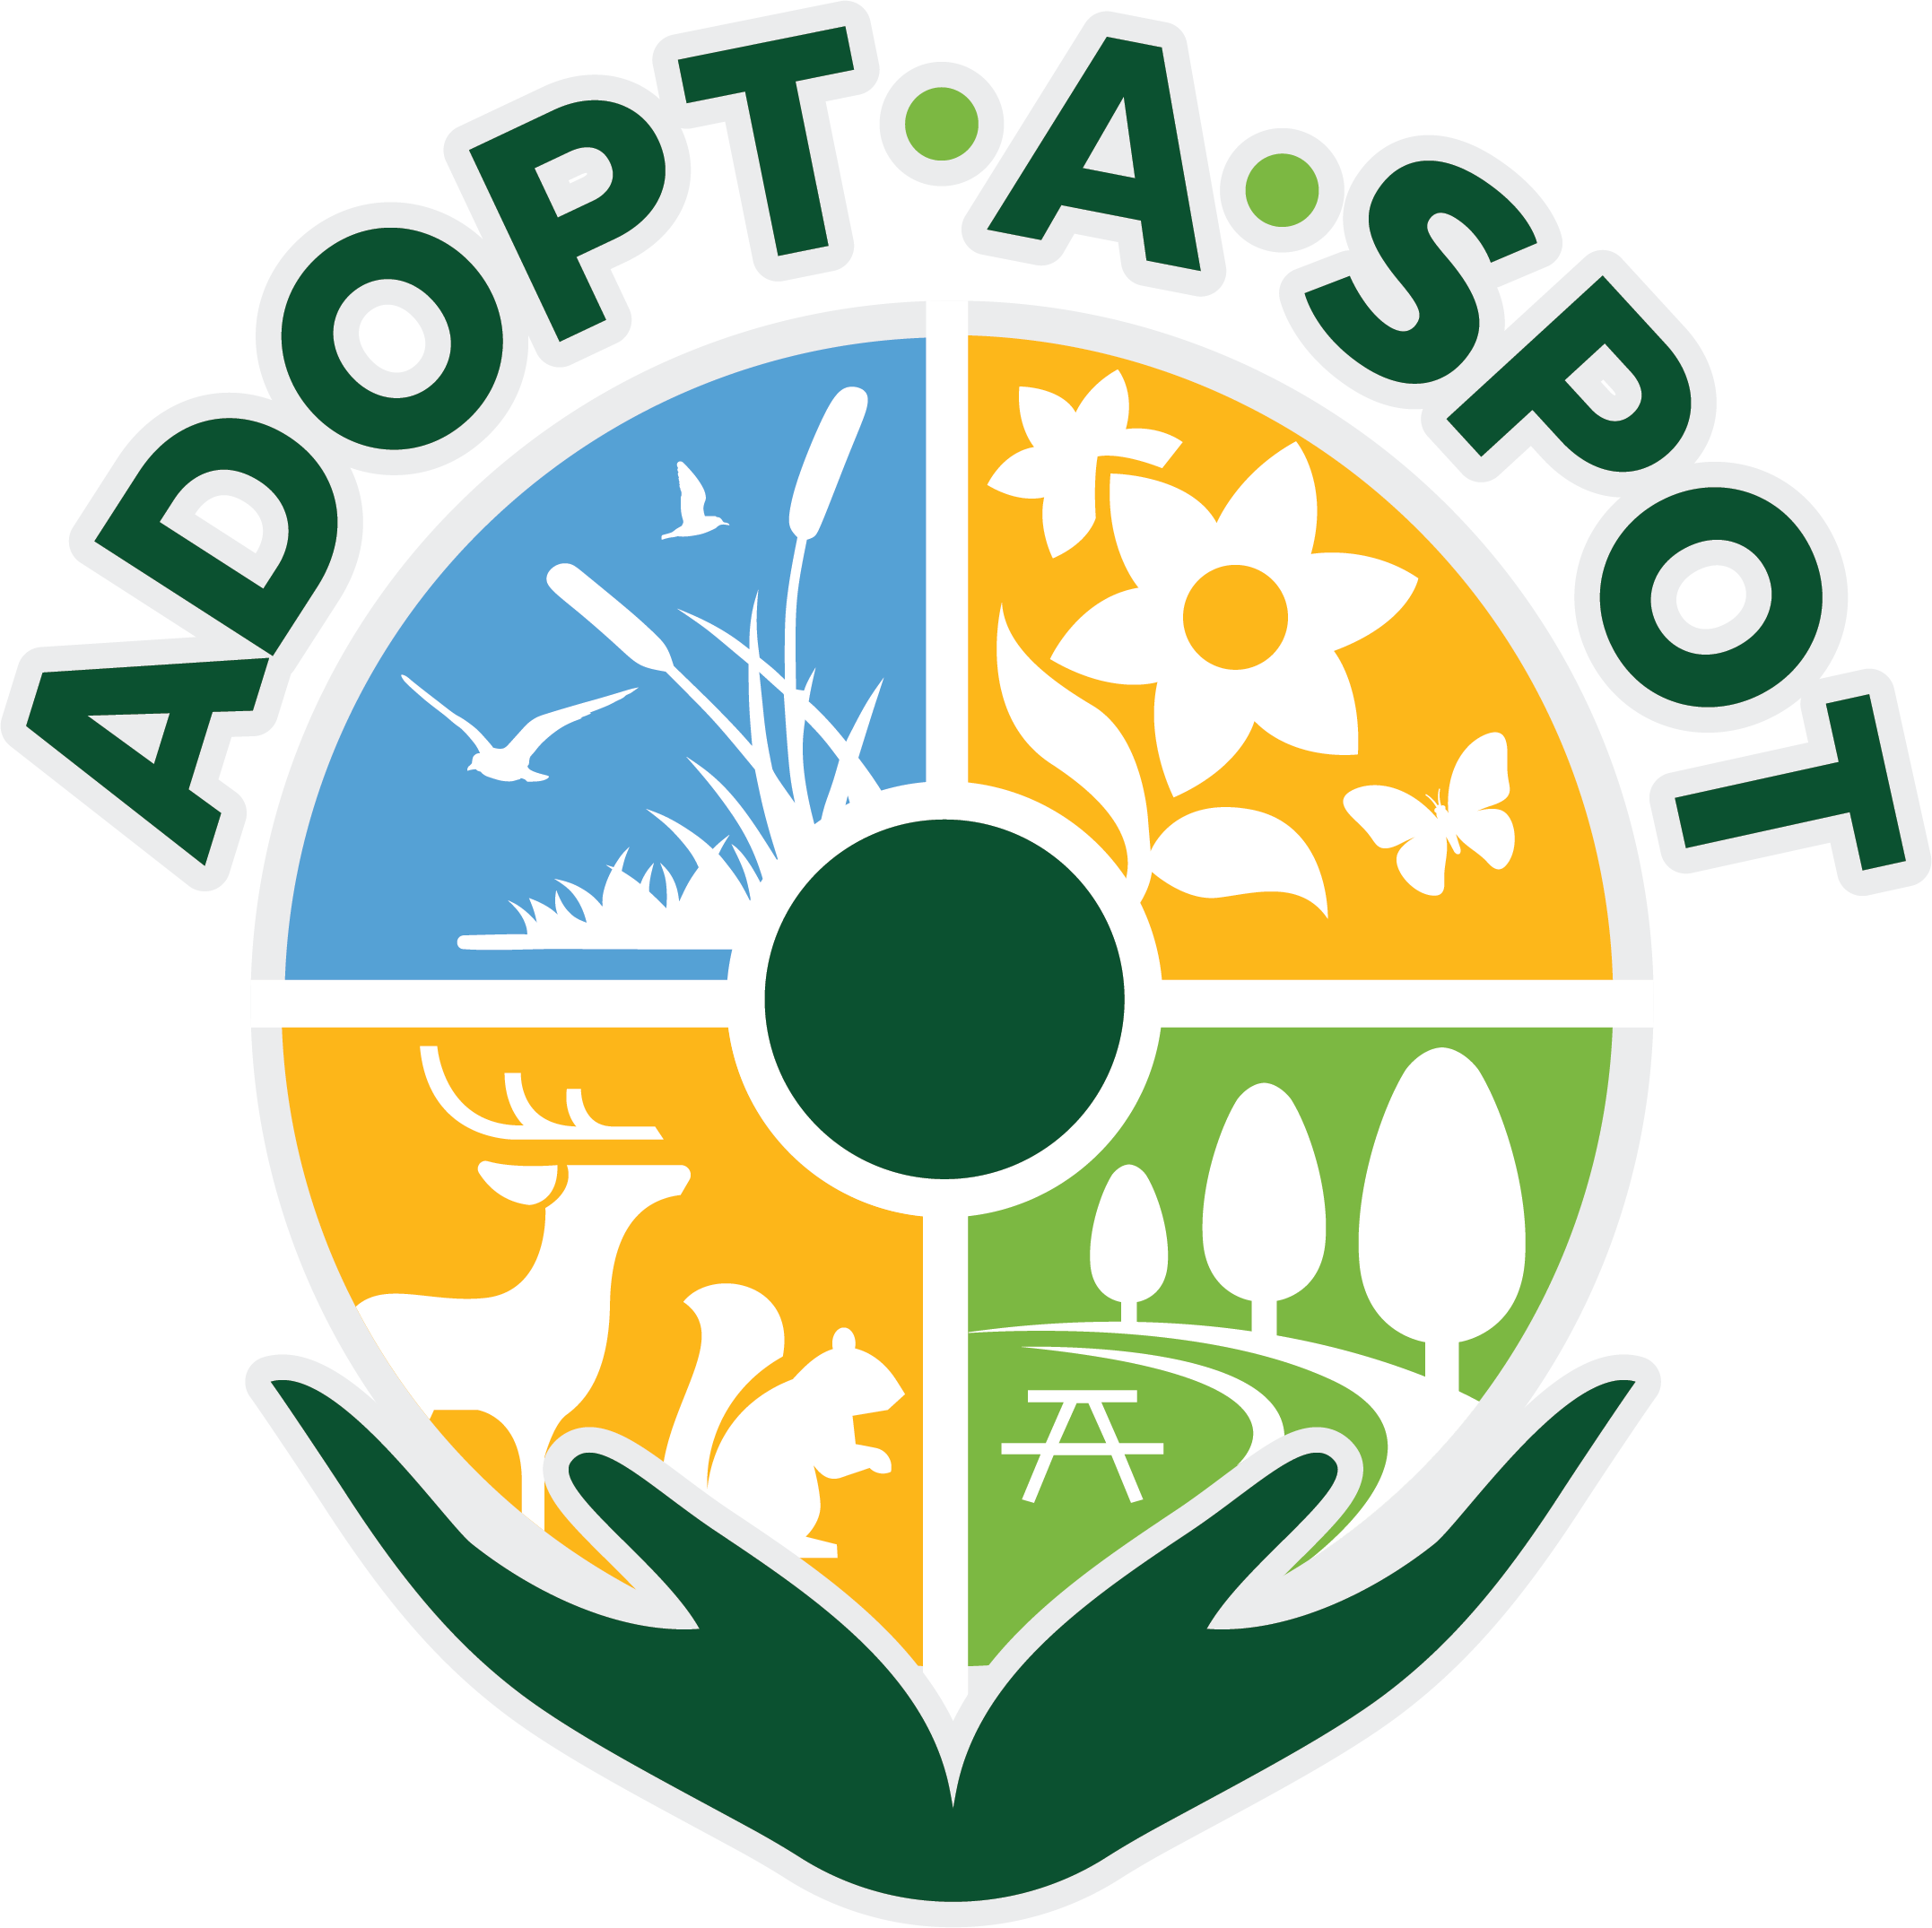 Adopt-a-Spot